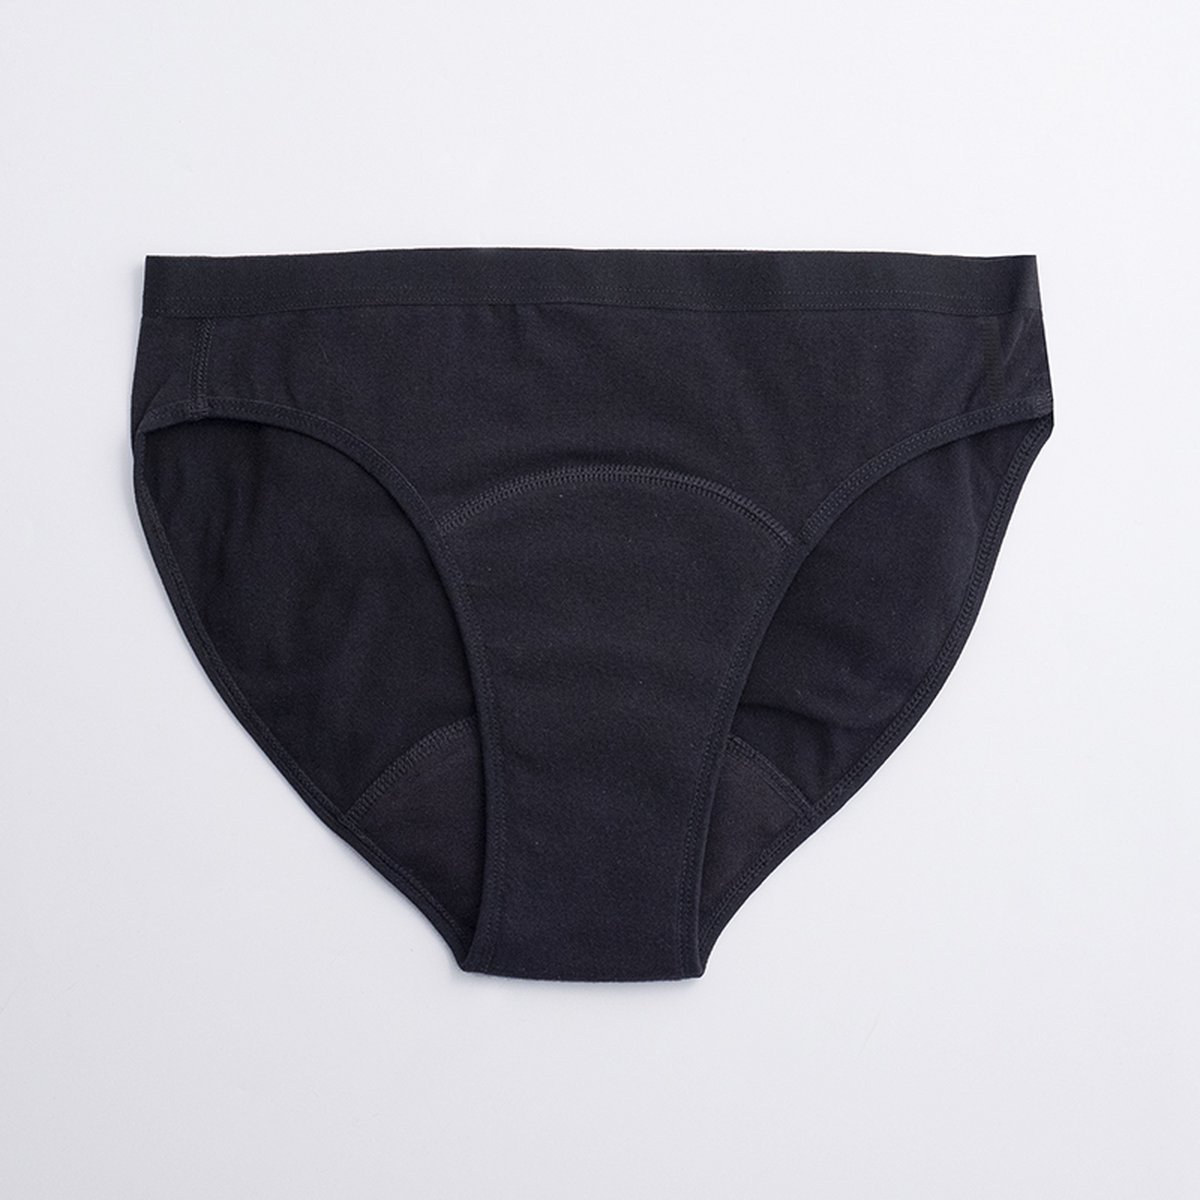 ImseVimse - Imse - menstruatieondergoed - Bikini model period underwear - lichte menstruatie - L - eur 44/46 - zwart